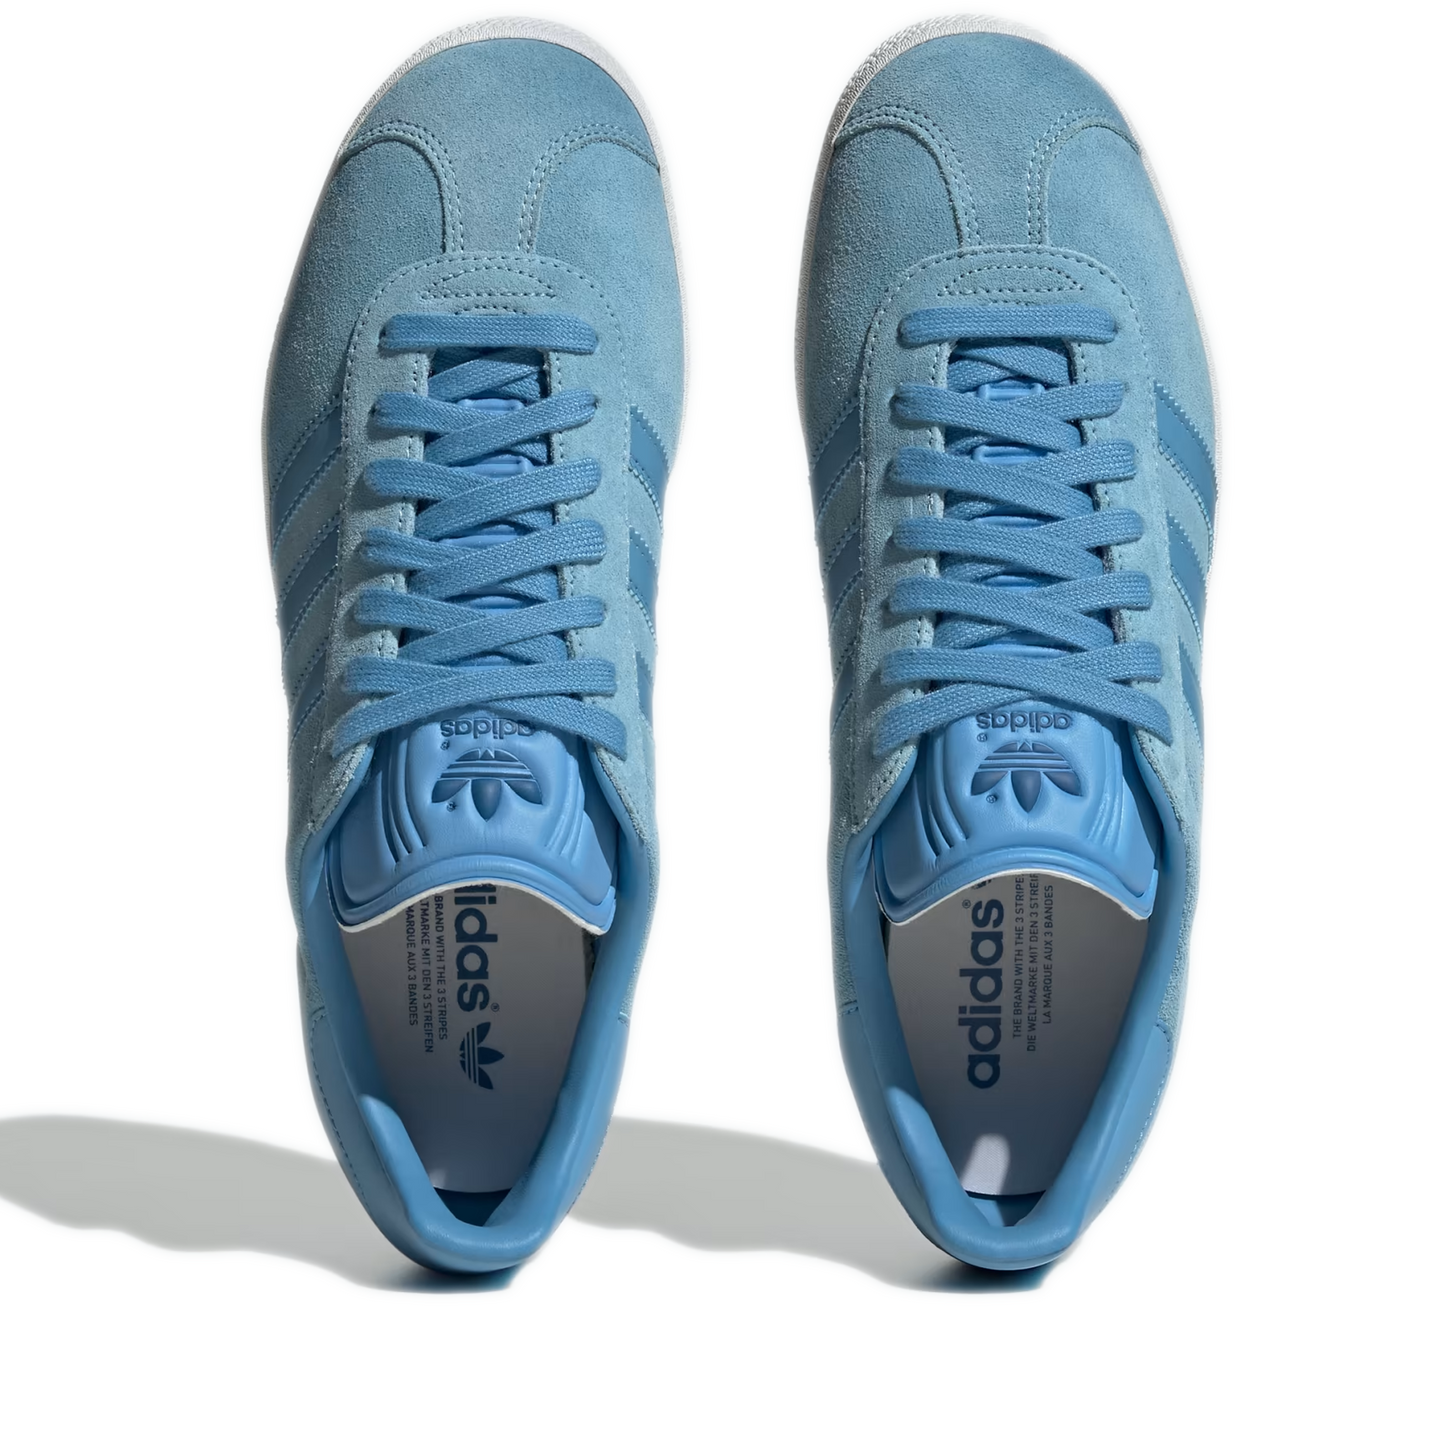 Men's Adidas Gazelle Shoes - Clear Blue / Light Blue / Off White